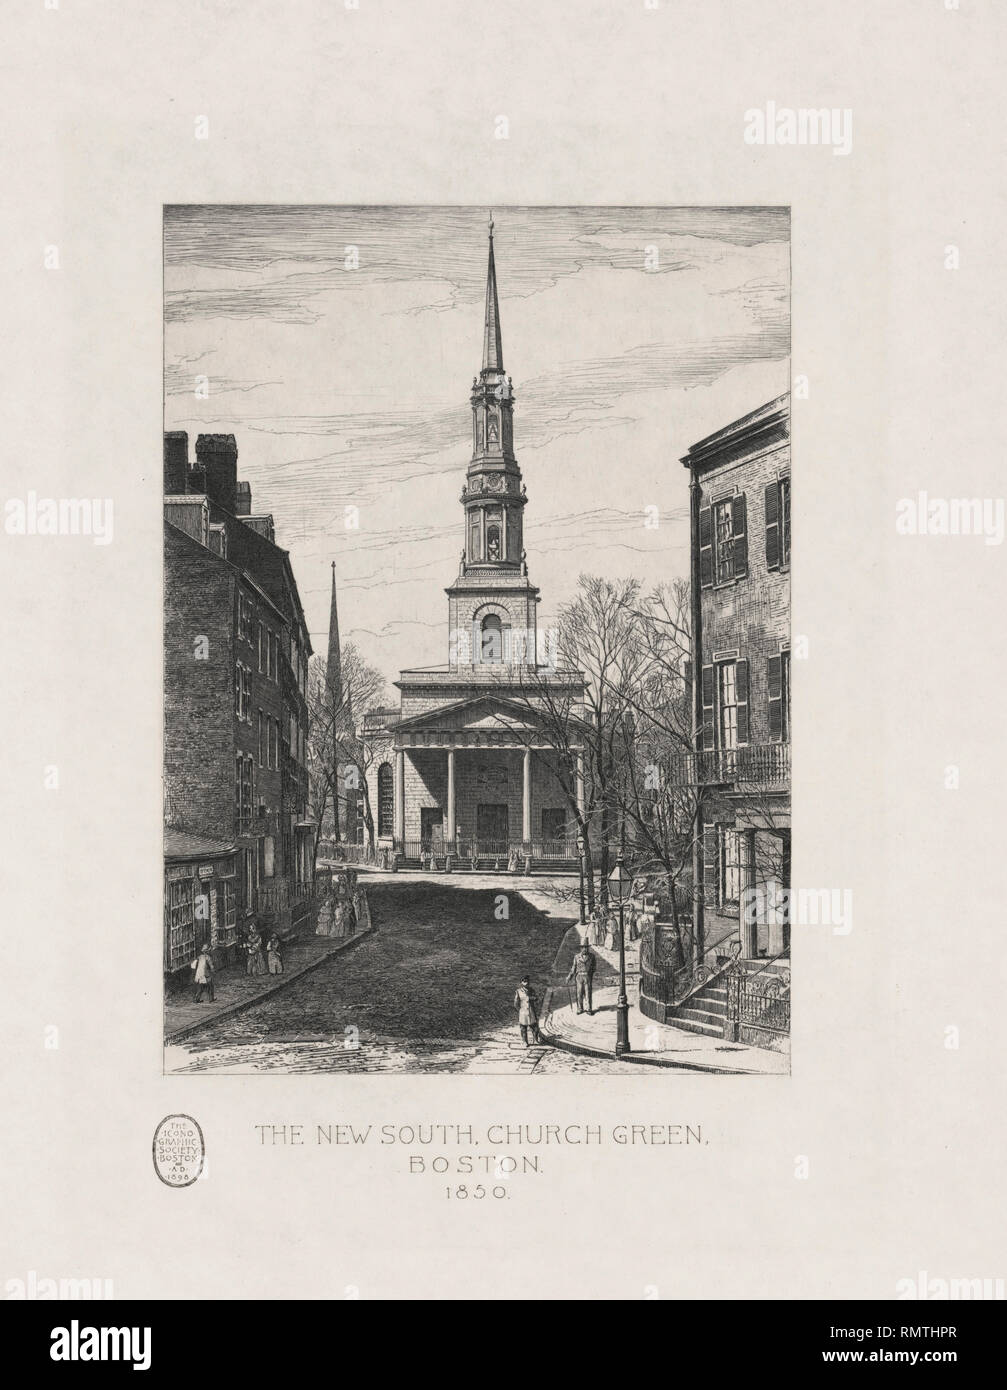 Der neue Süden, Kirche Grün, Boston, 1850, Radierung von Lawton Sidney Smith, von der ikonographischen Gesellschaft, 1898 veröffentlicht. Stockfoto